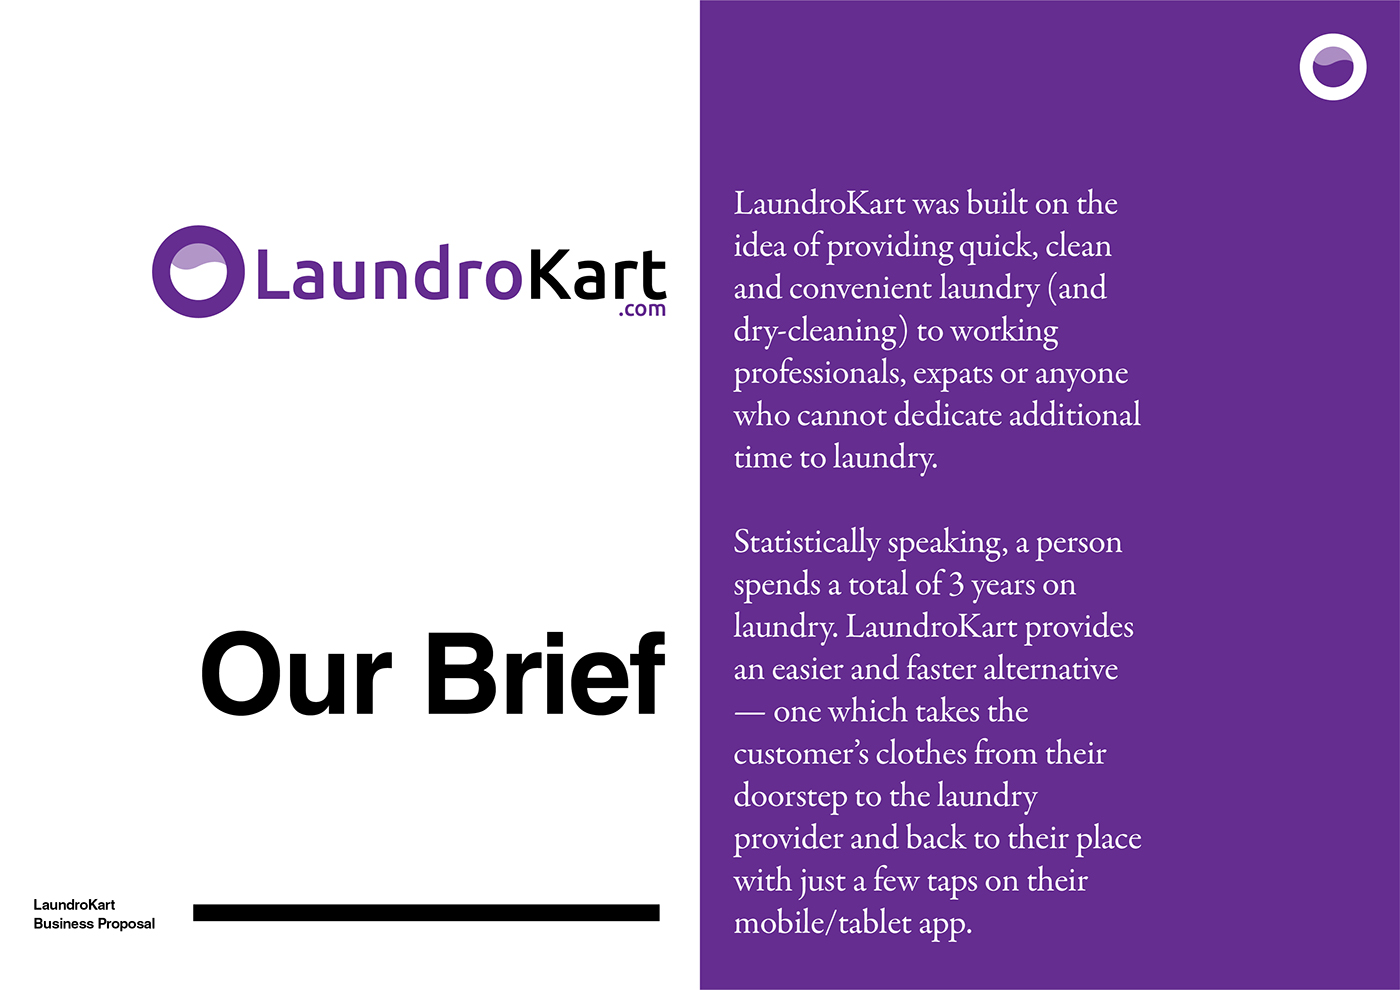 LaundroKart cleaning service lifestyle eco-friendly hygenic professional Washing ironing care